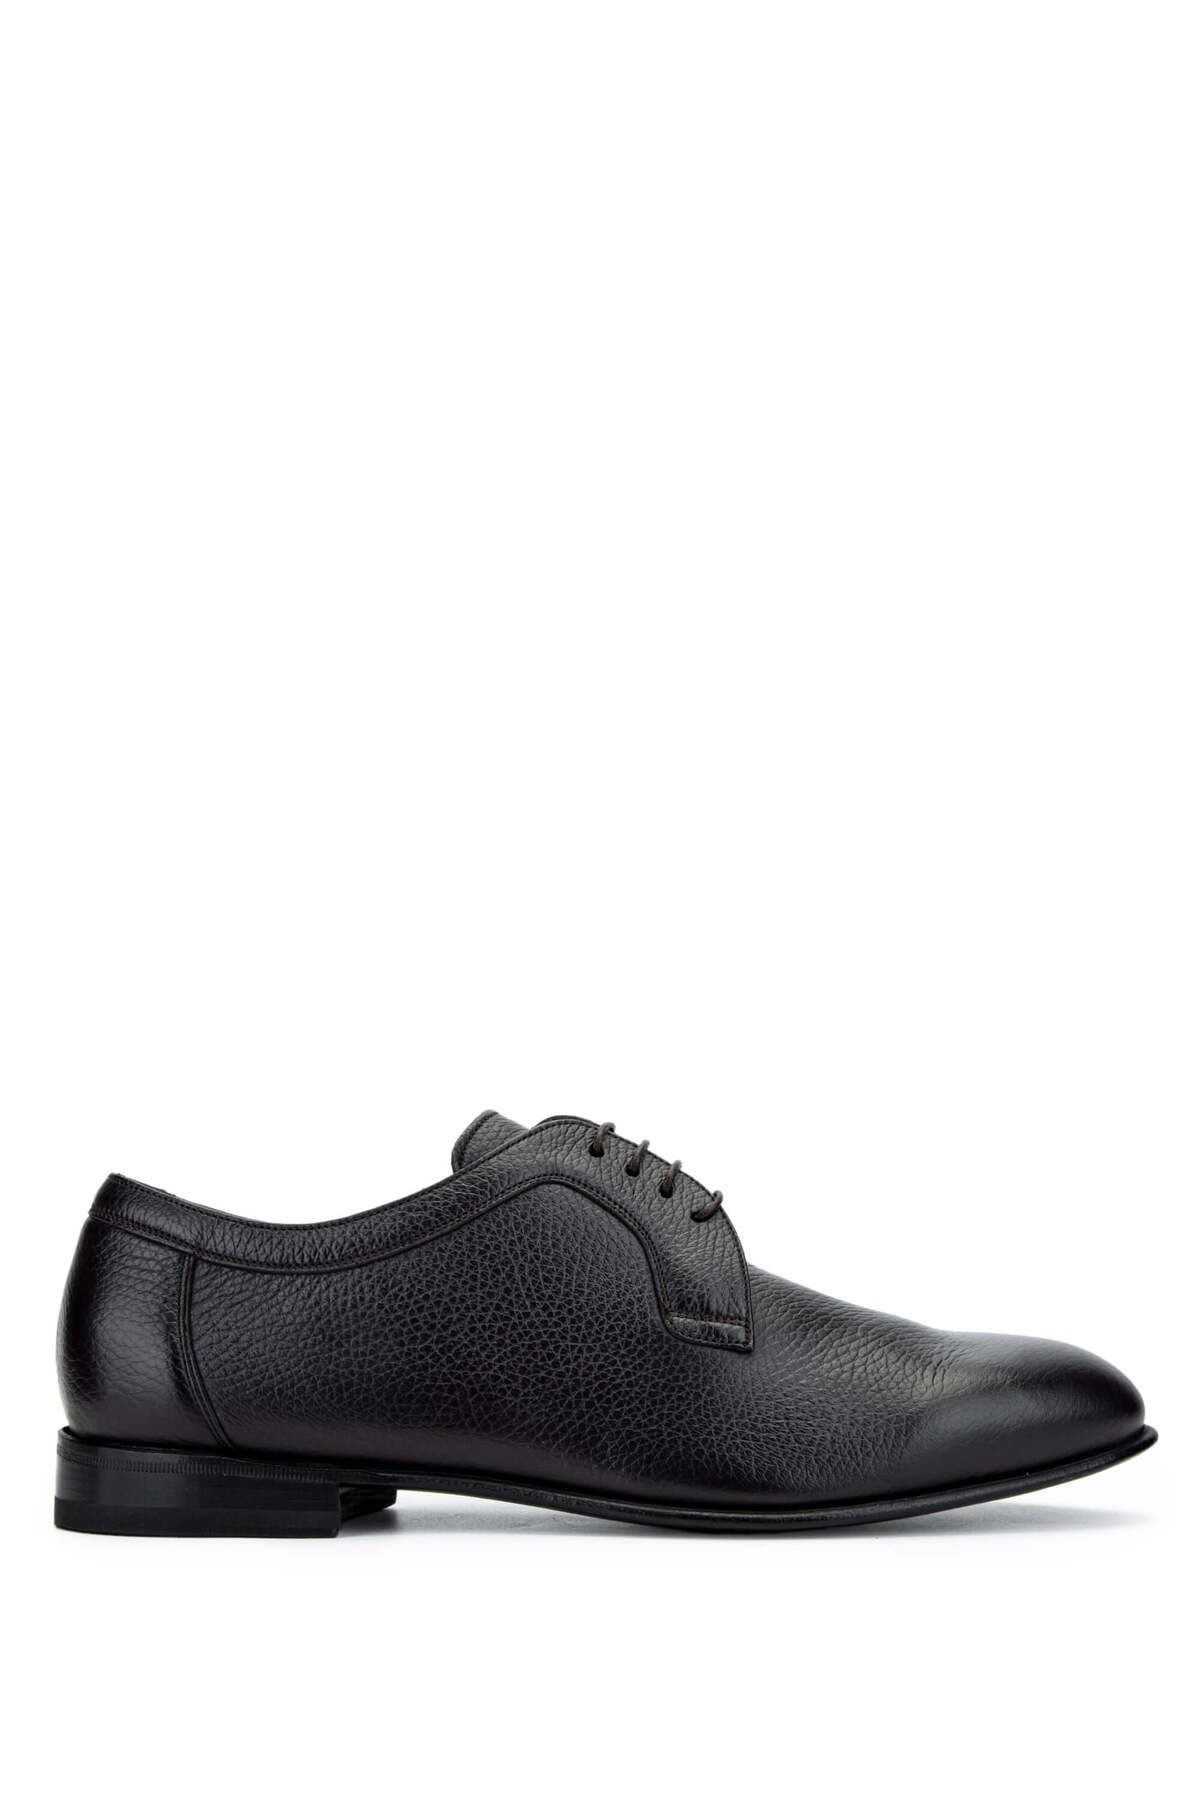 Franceschettı Franceschetti Erkek Hakiki Deri Kahverengi Klasik Ayakkabı